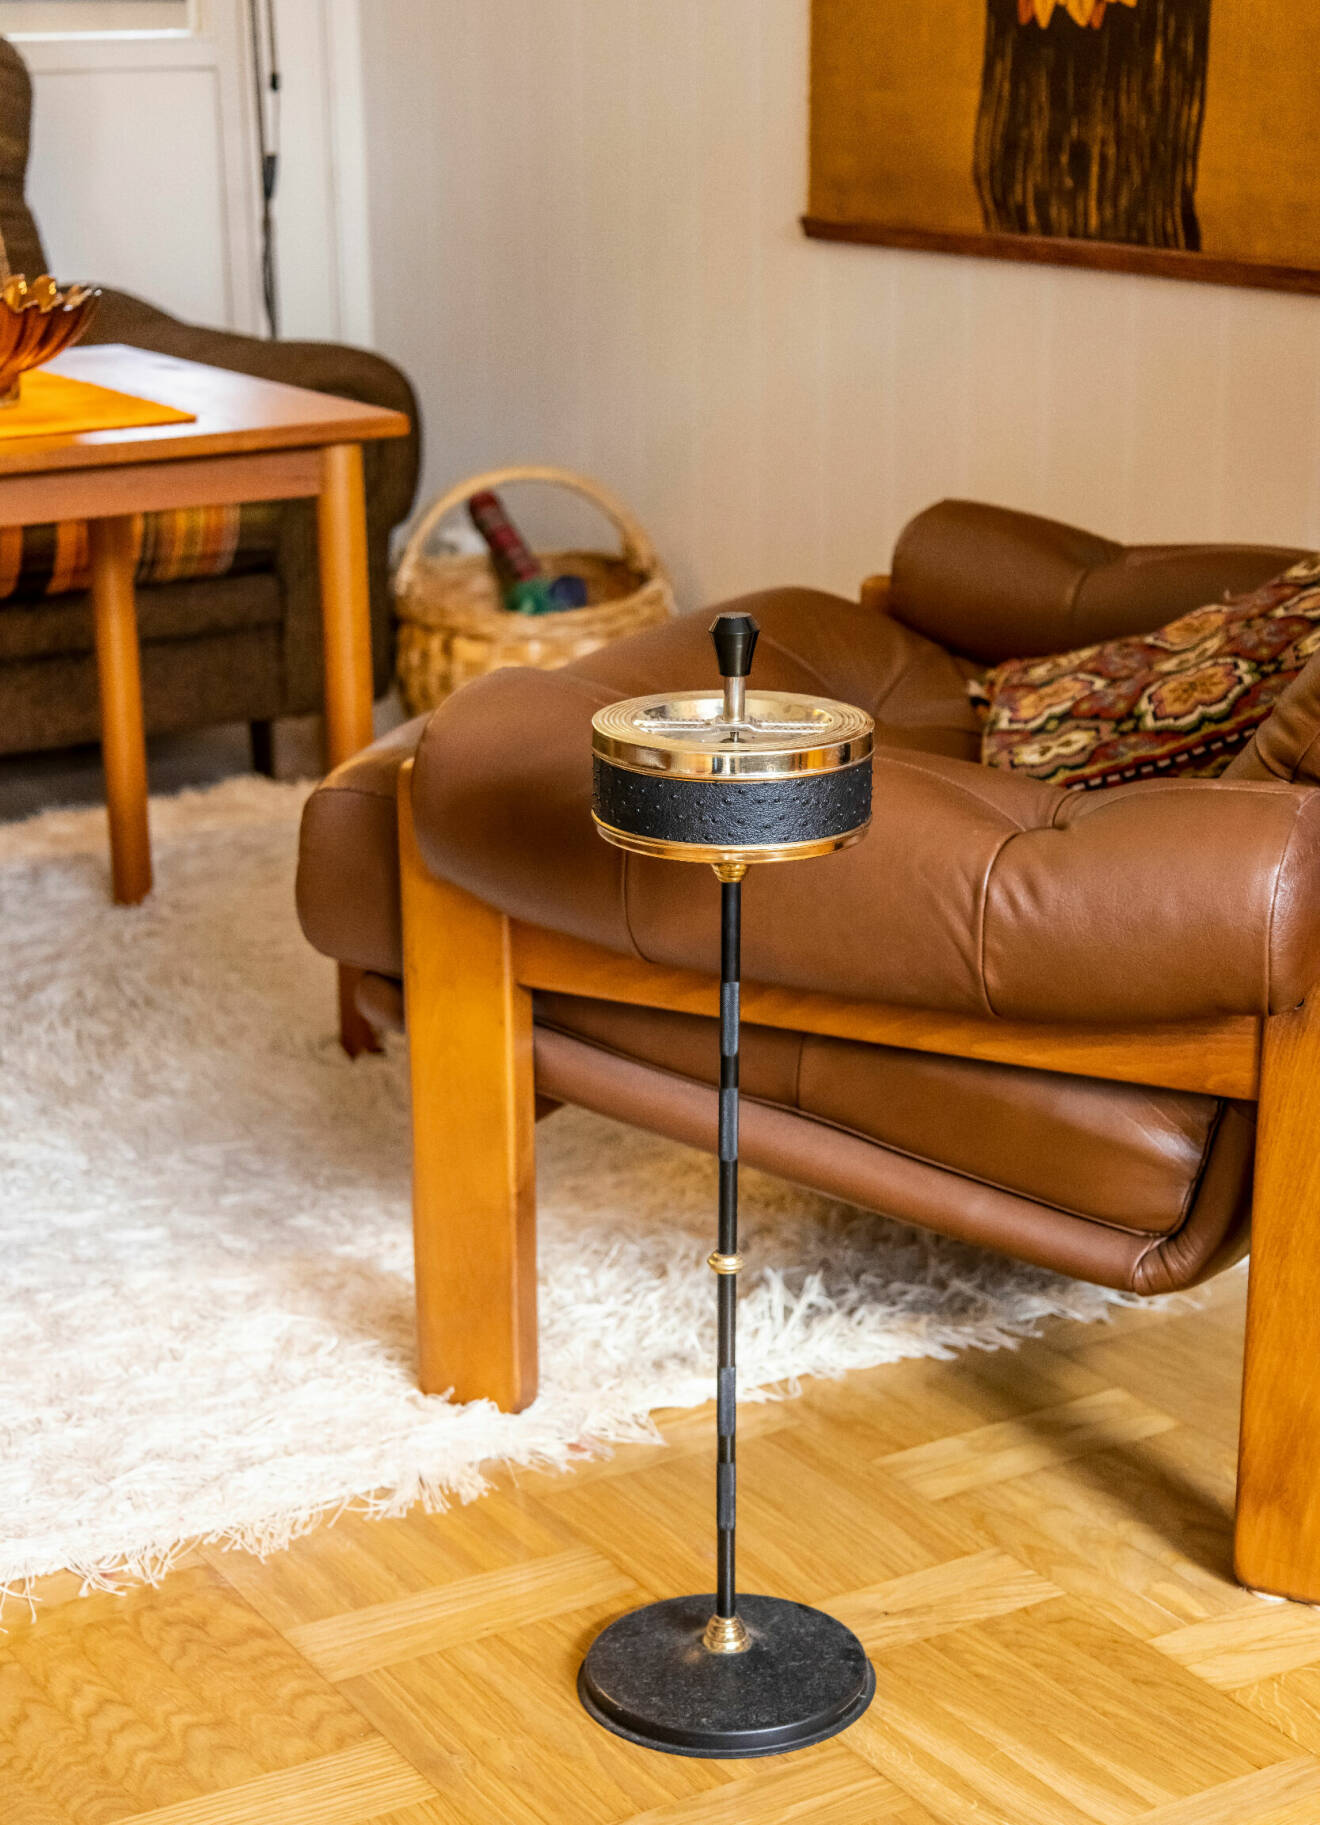 En askkopp på fot står placerad på golvet framför en brun läderfåtölj i ett vardagsrum från 70-talet.